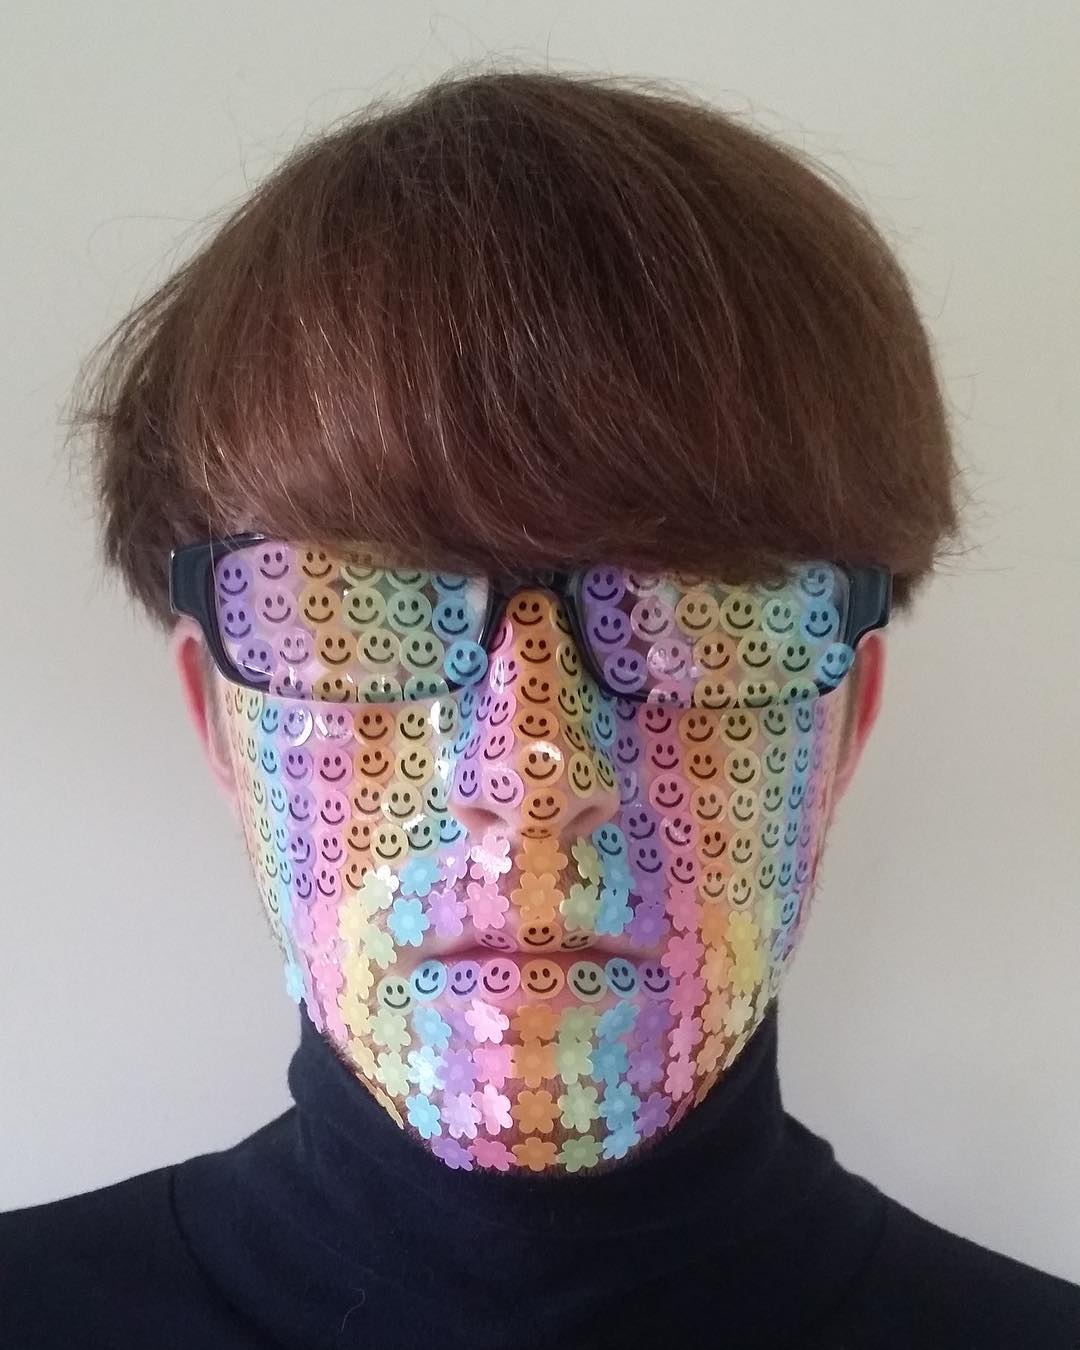 L'artiste Adam Hillman pose avec sa coupe au bol et ses lunettes, la tête recouverte de petites gommettes colorées.